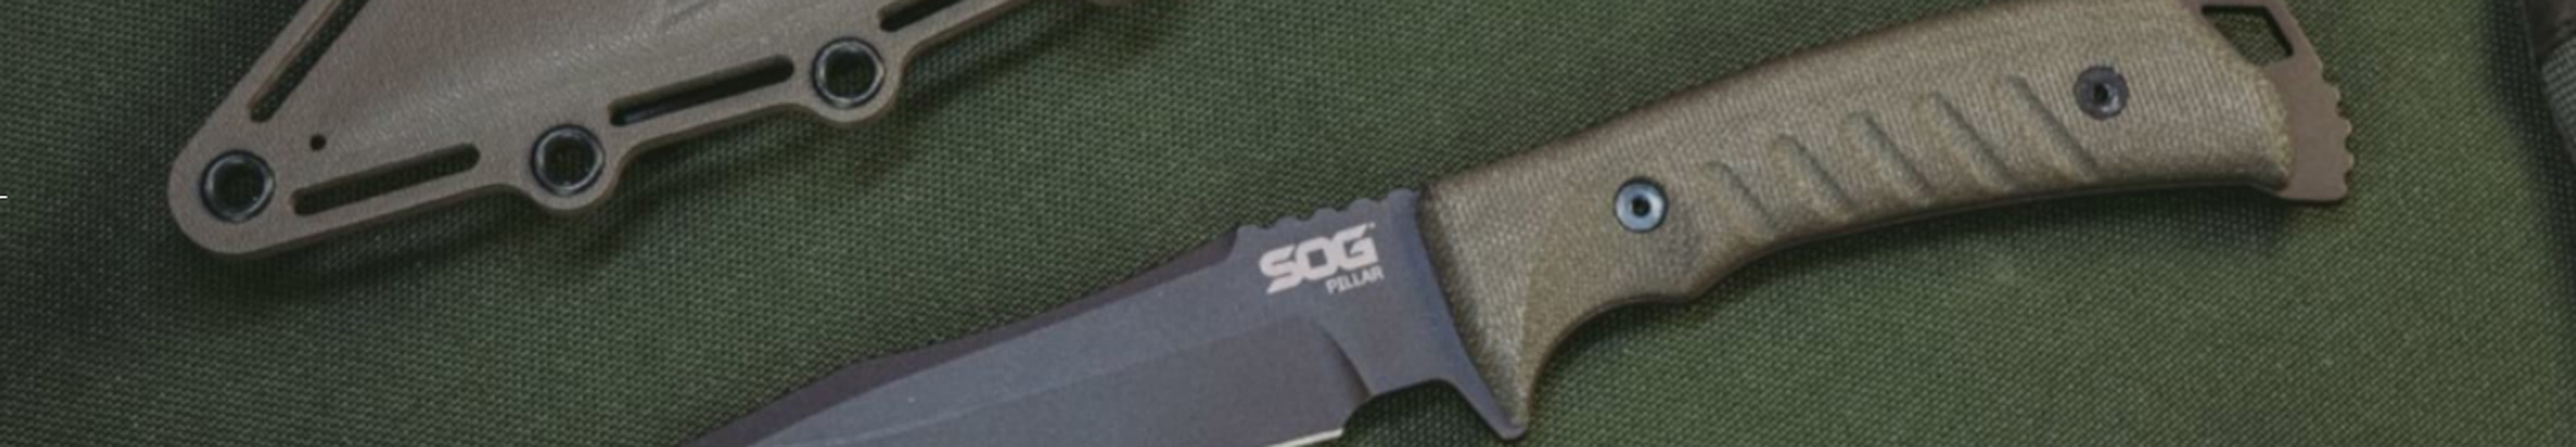 SOG Knives & Tools